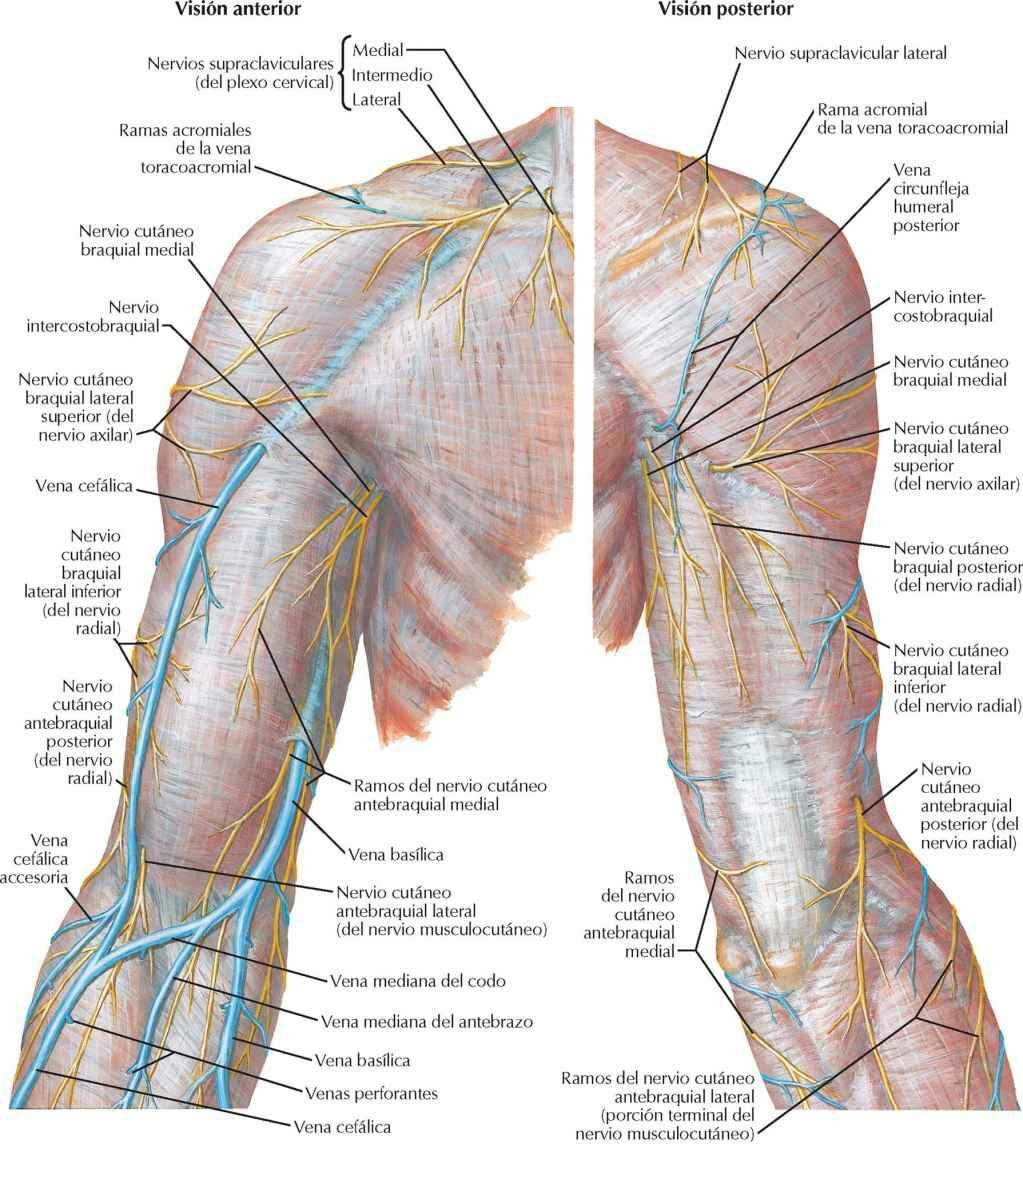 Nervios cutáneos y venas superficiales de la porción proximal del miembro superior